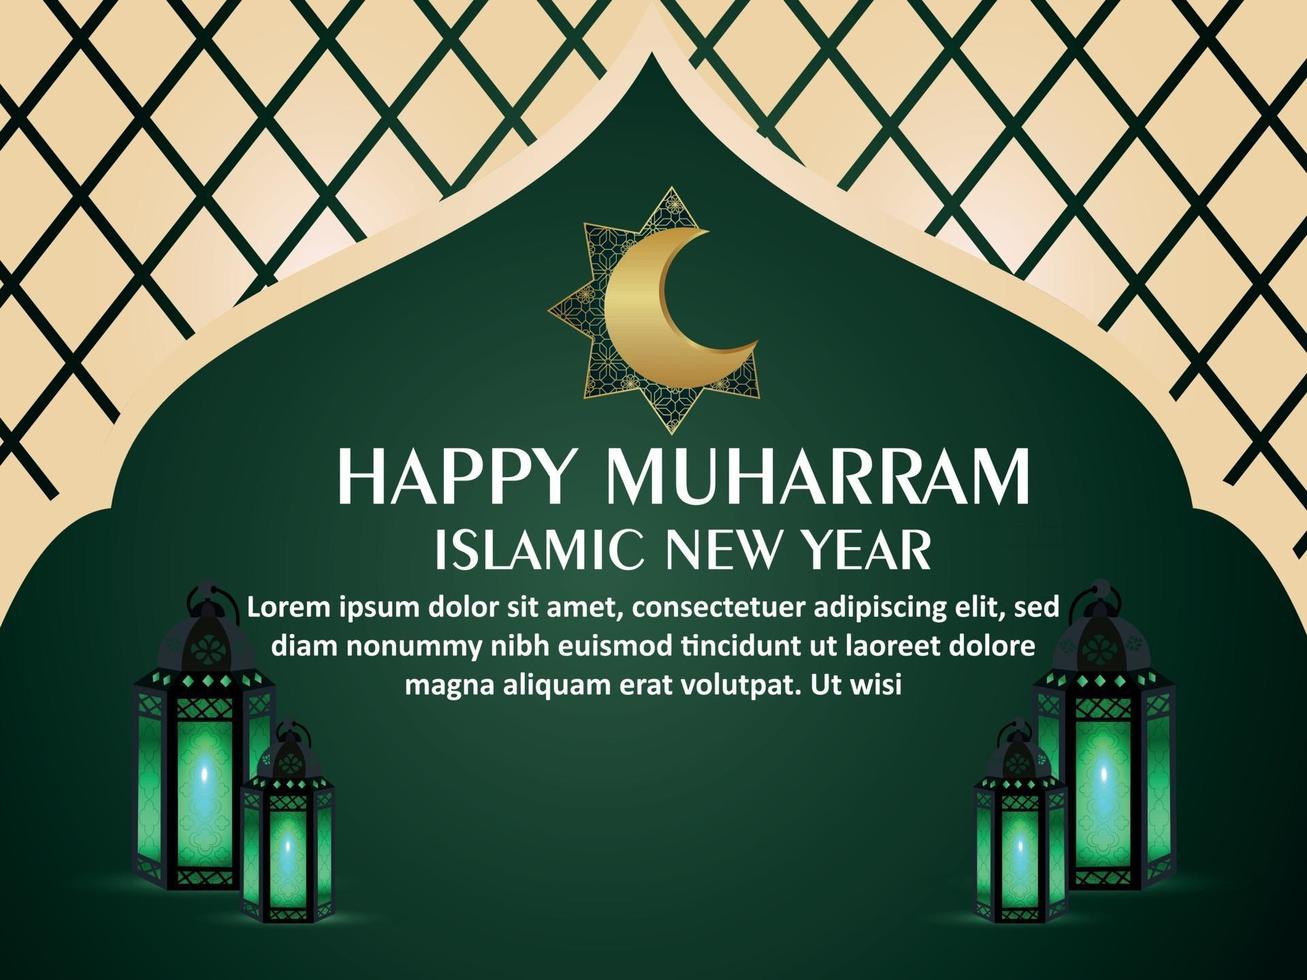 carte de voeux de nouvel an islamique joyeux muharram invitation avec motif de fond vecteur